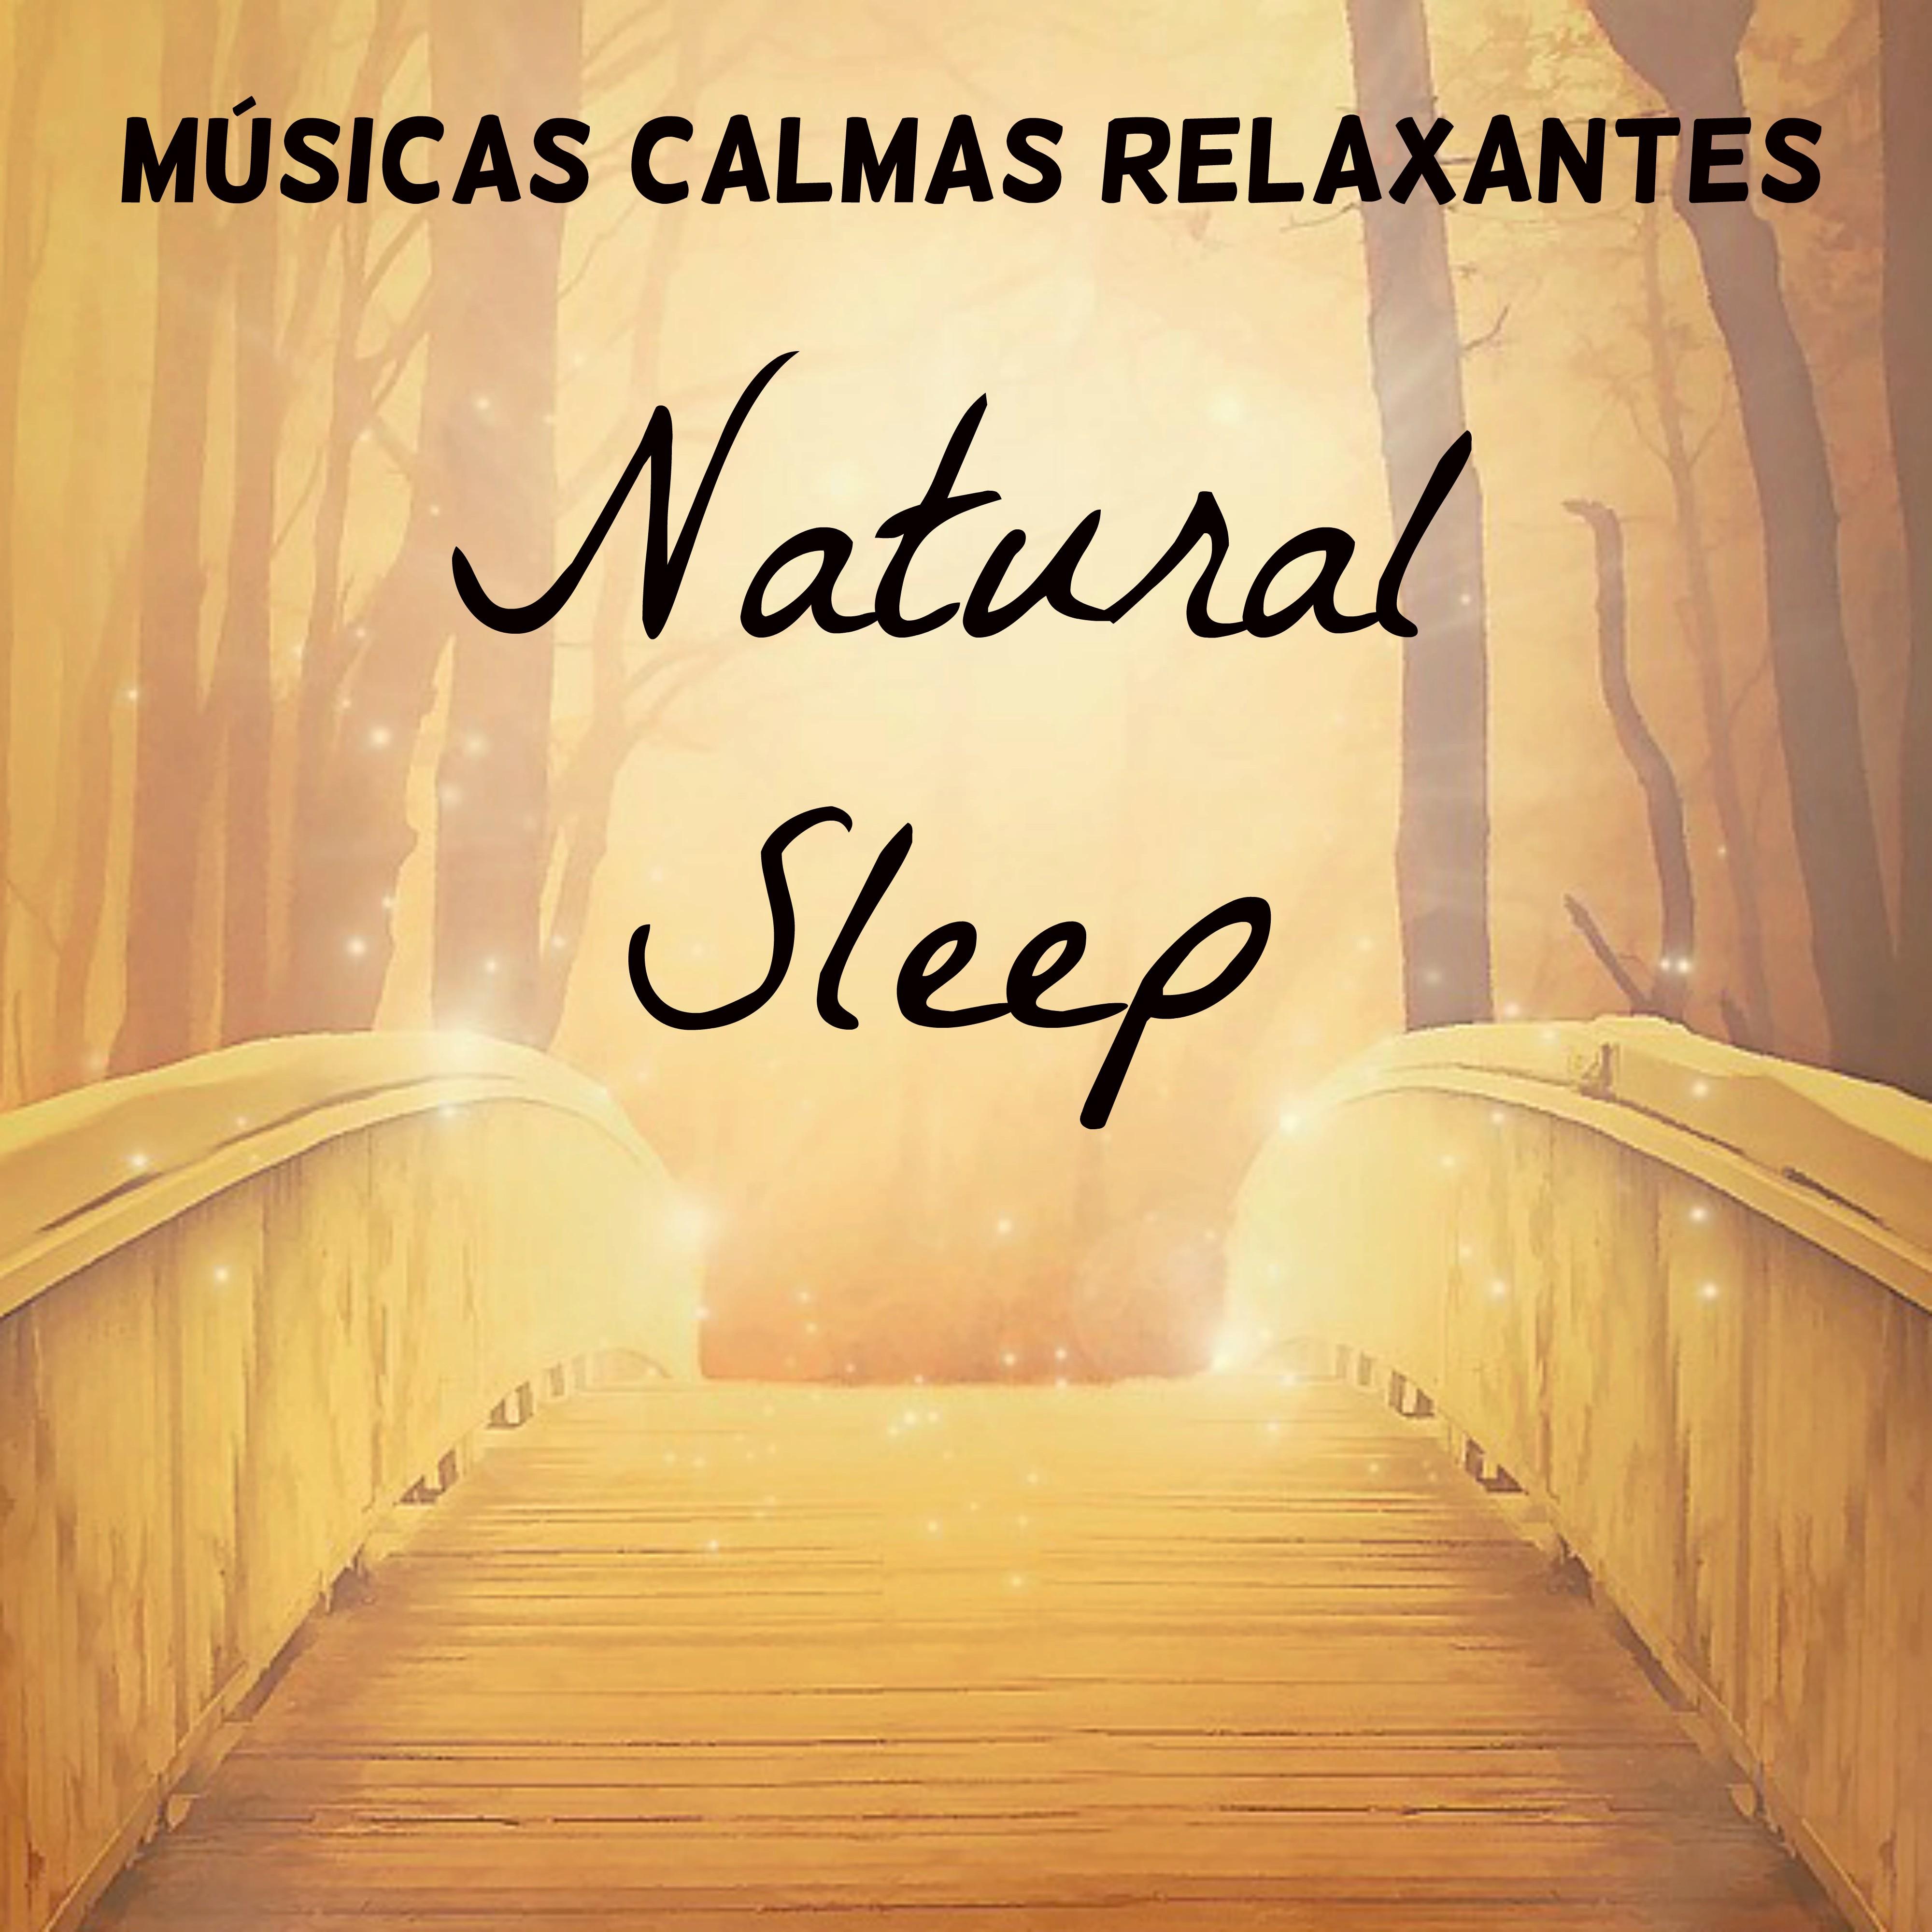 Natural Sleep  Mu sicas Calmas Relaxantes para Retiro Medita o Chakras do Corpo Tratamento Espiritual com Sons Naturais Instrumentais New Age